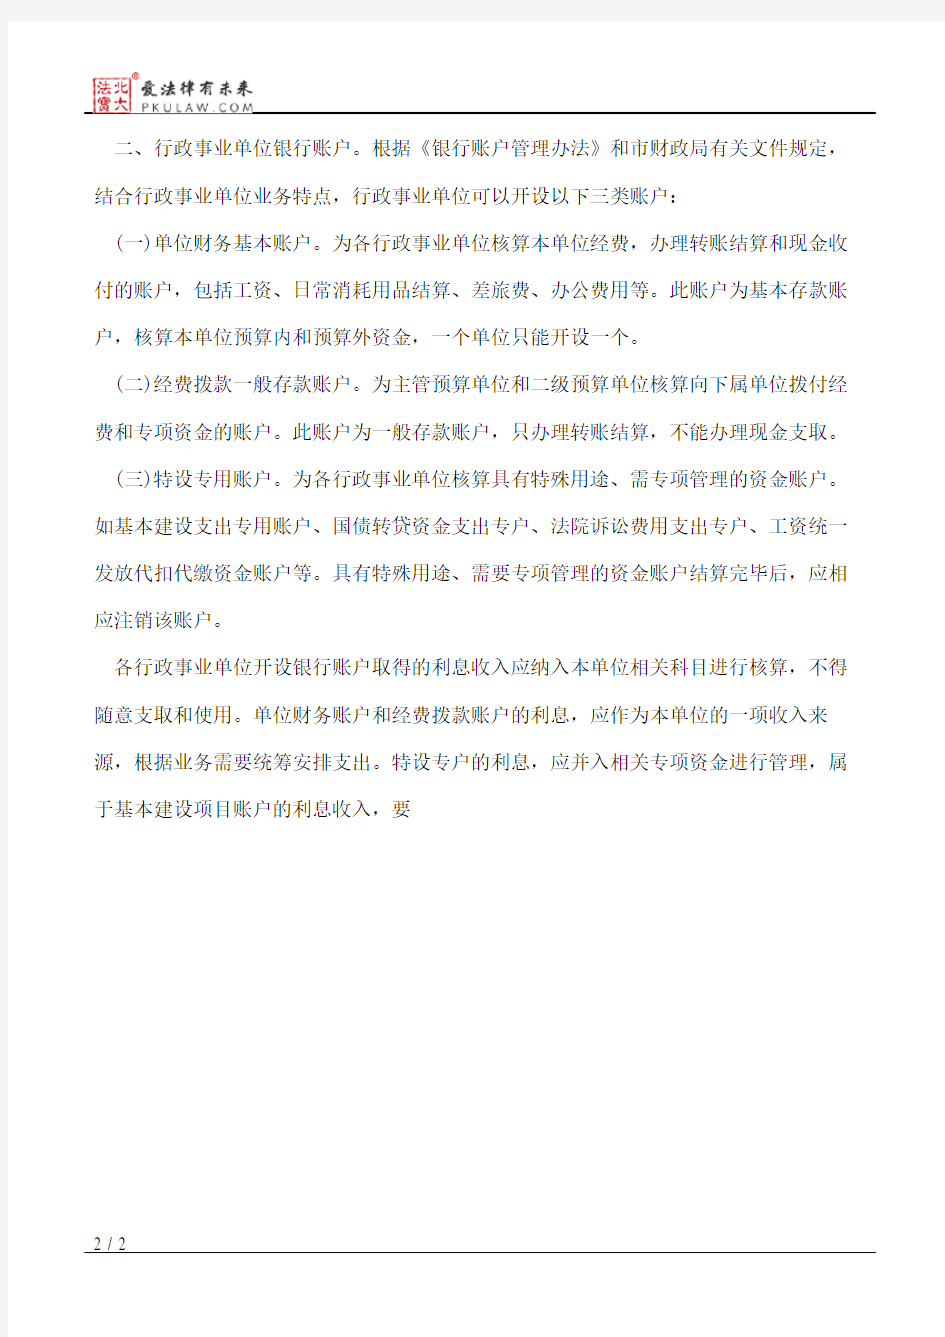 天津市行政事业单位银行账户管理暂行办法